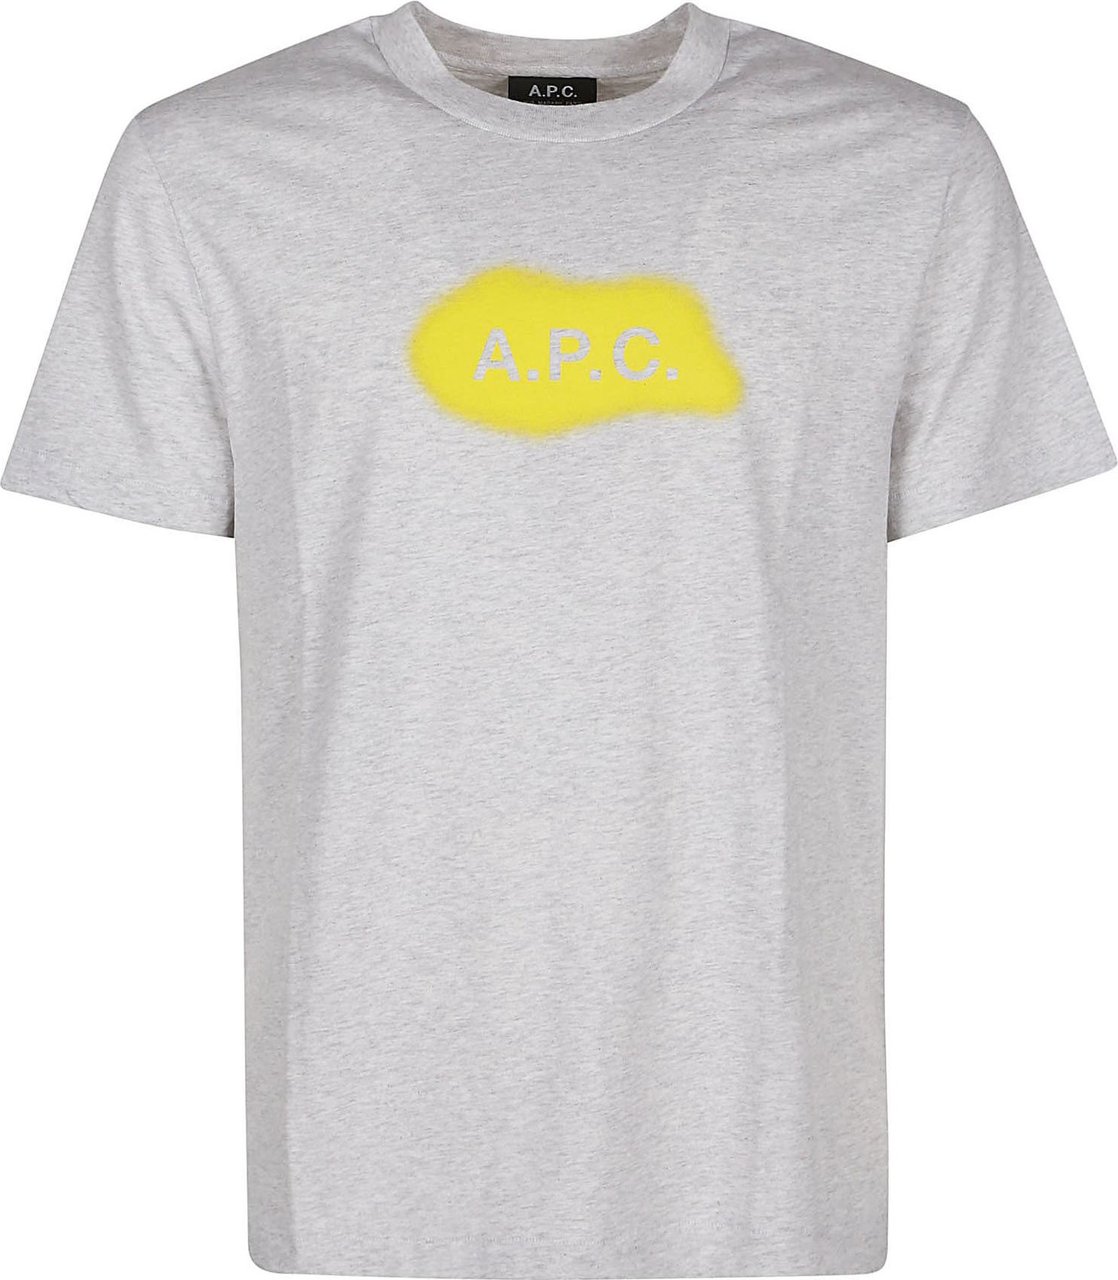 A.P.C. Albert T-shirt Grey Grijs